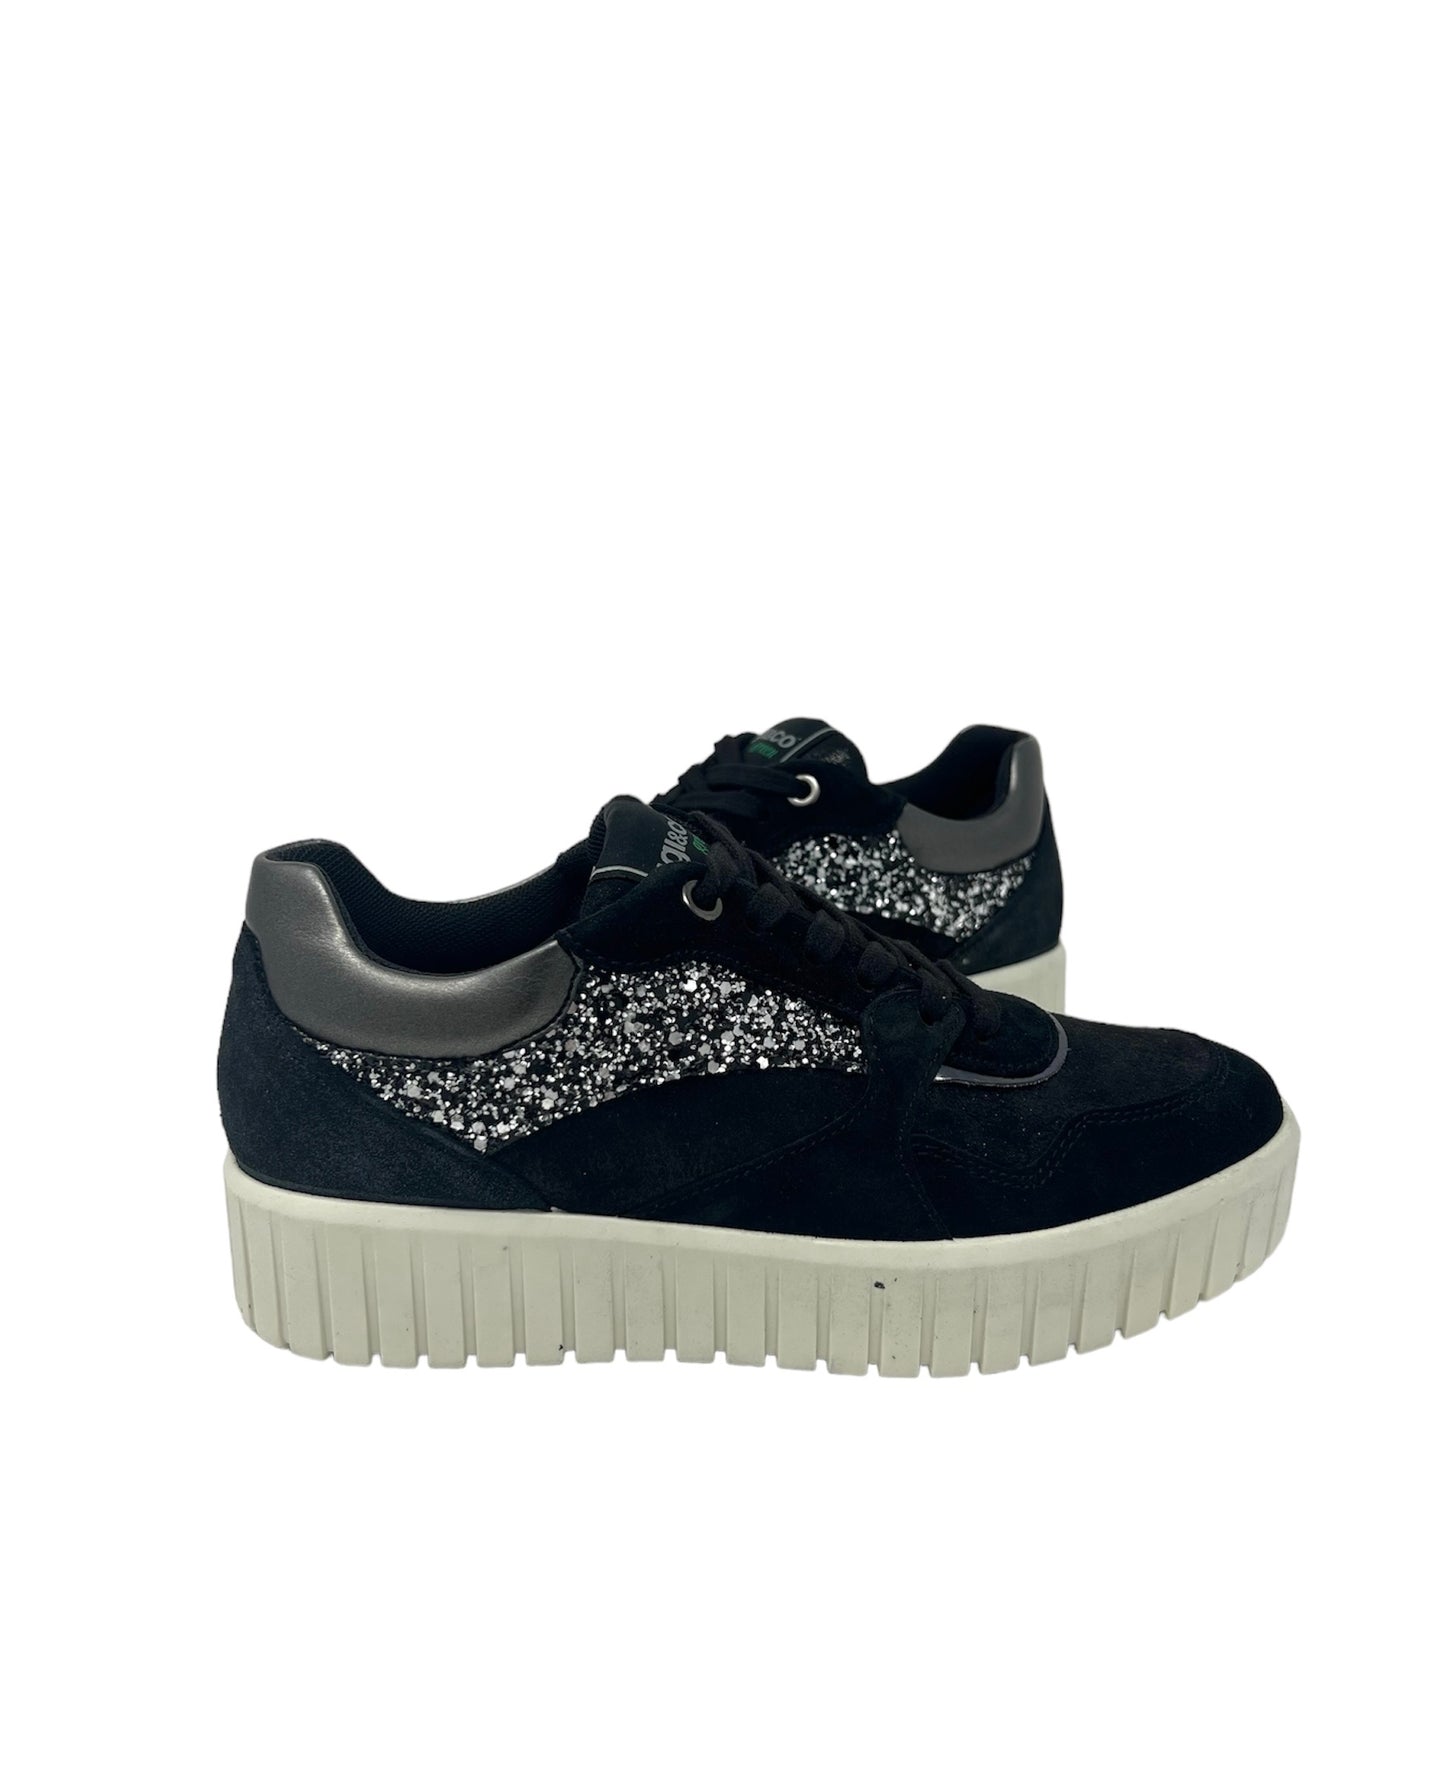 Sneakers in camoscio nero e glitter-4578700